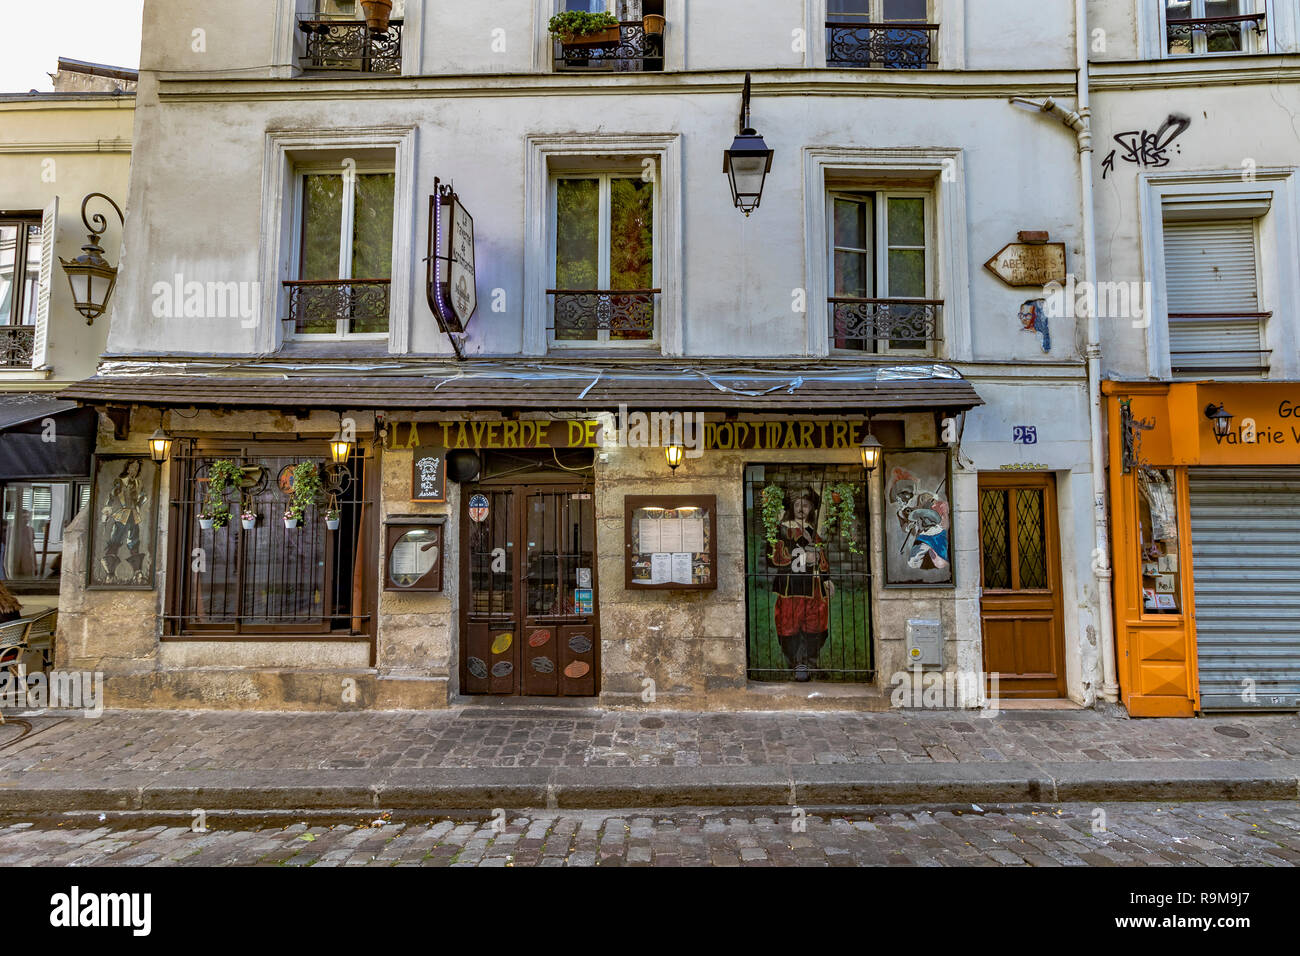 La Taverne De Montmartre restaurant on Rue Gabrielle , in Montmartre, Paris, France Stock Photo